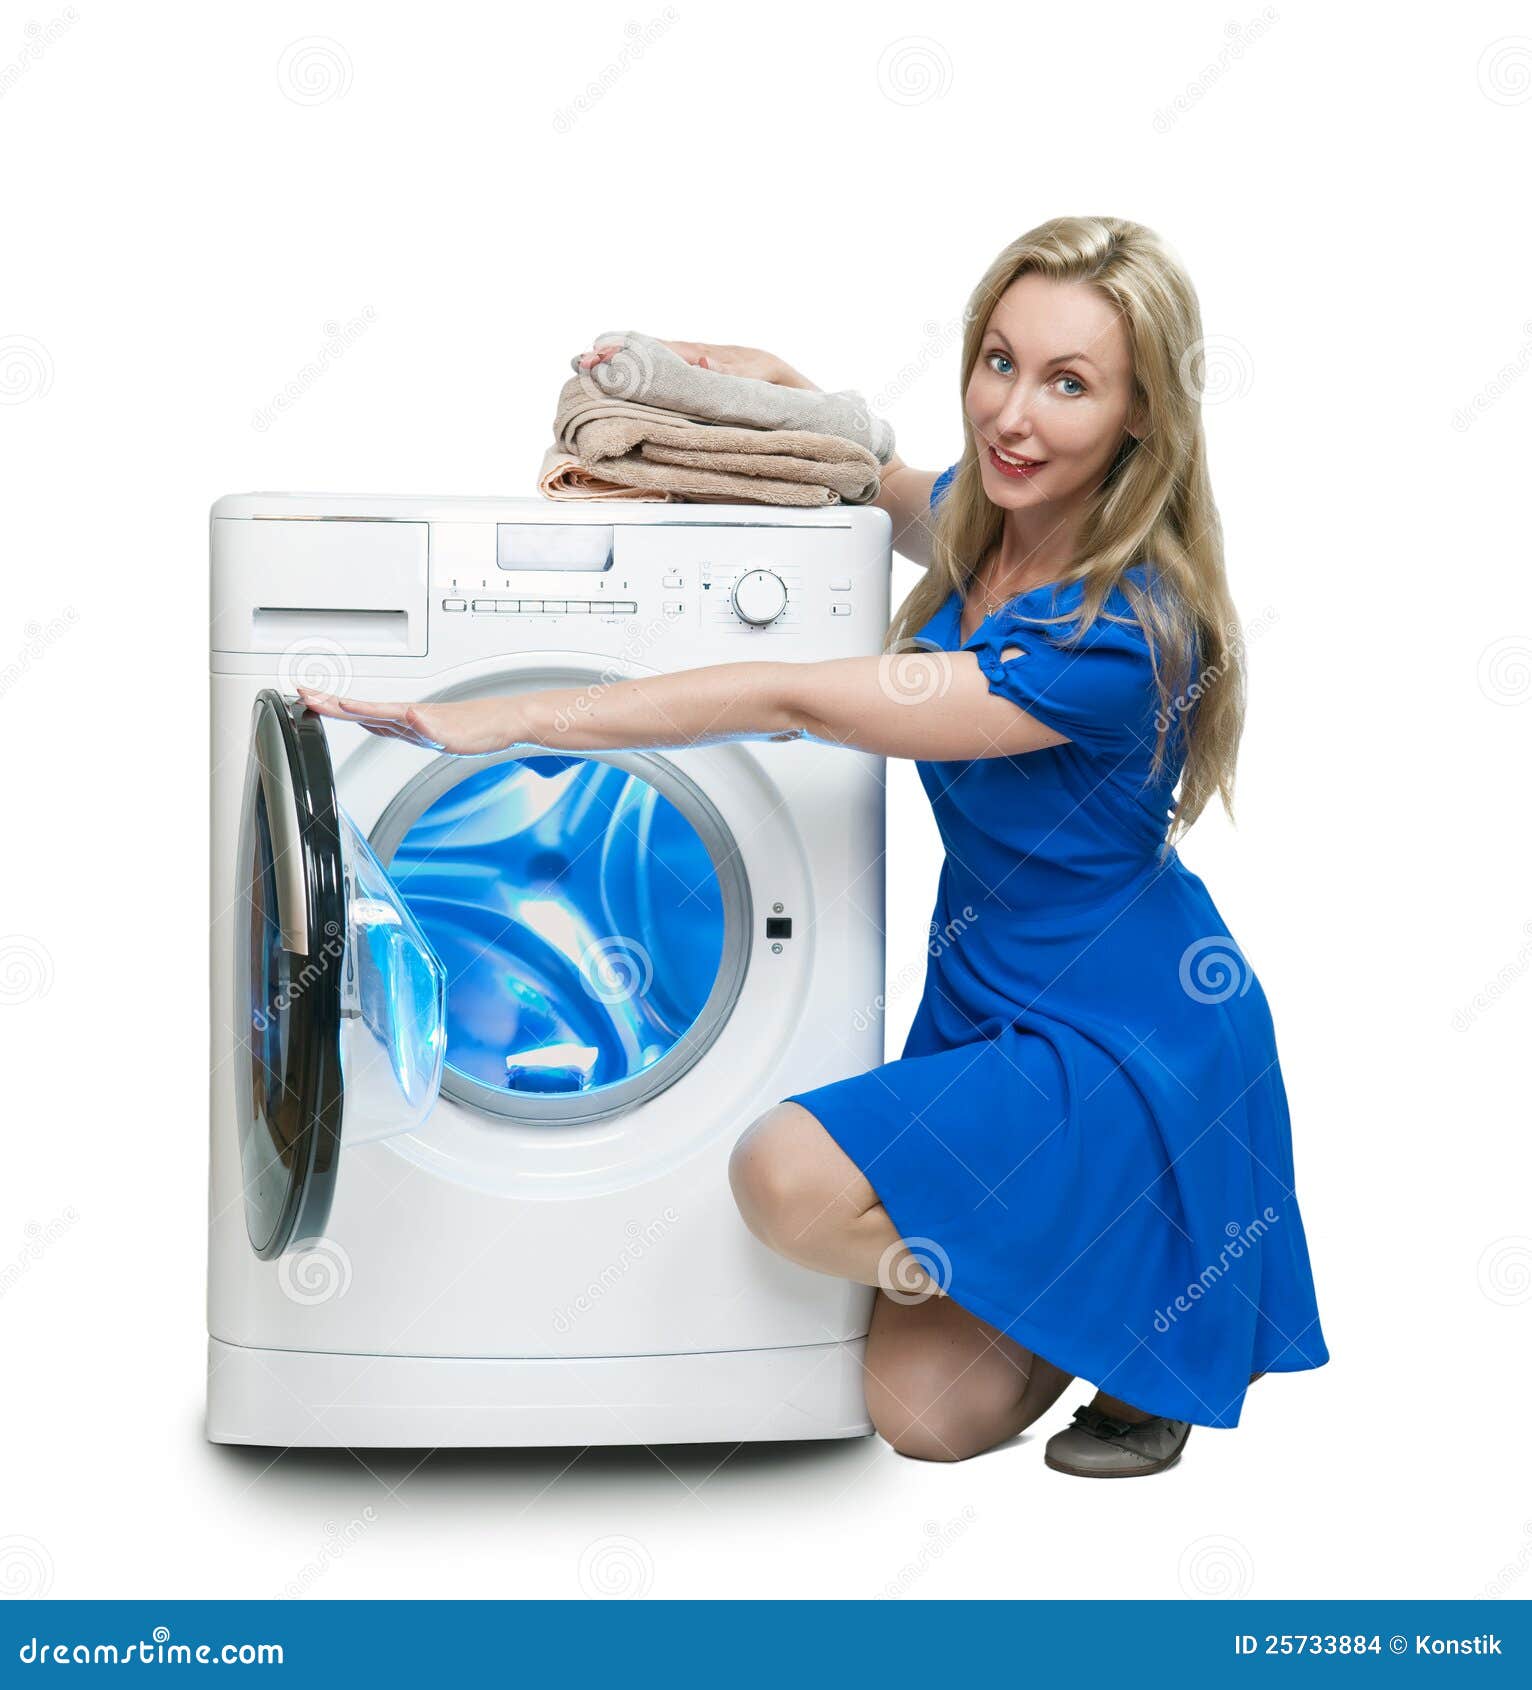 Стиральные машинки кемерово. Красивая стиральная машинка. Девушка с бытовой техникой. Реклама стиральной машины. Сломалась стиральная машина.